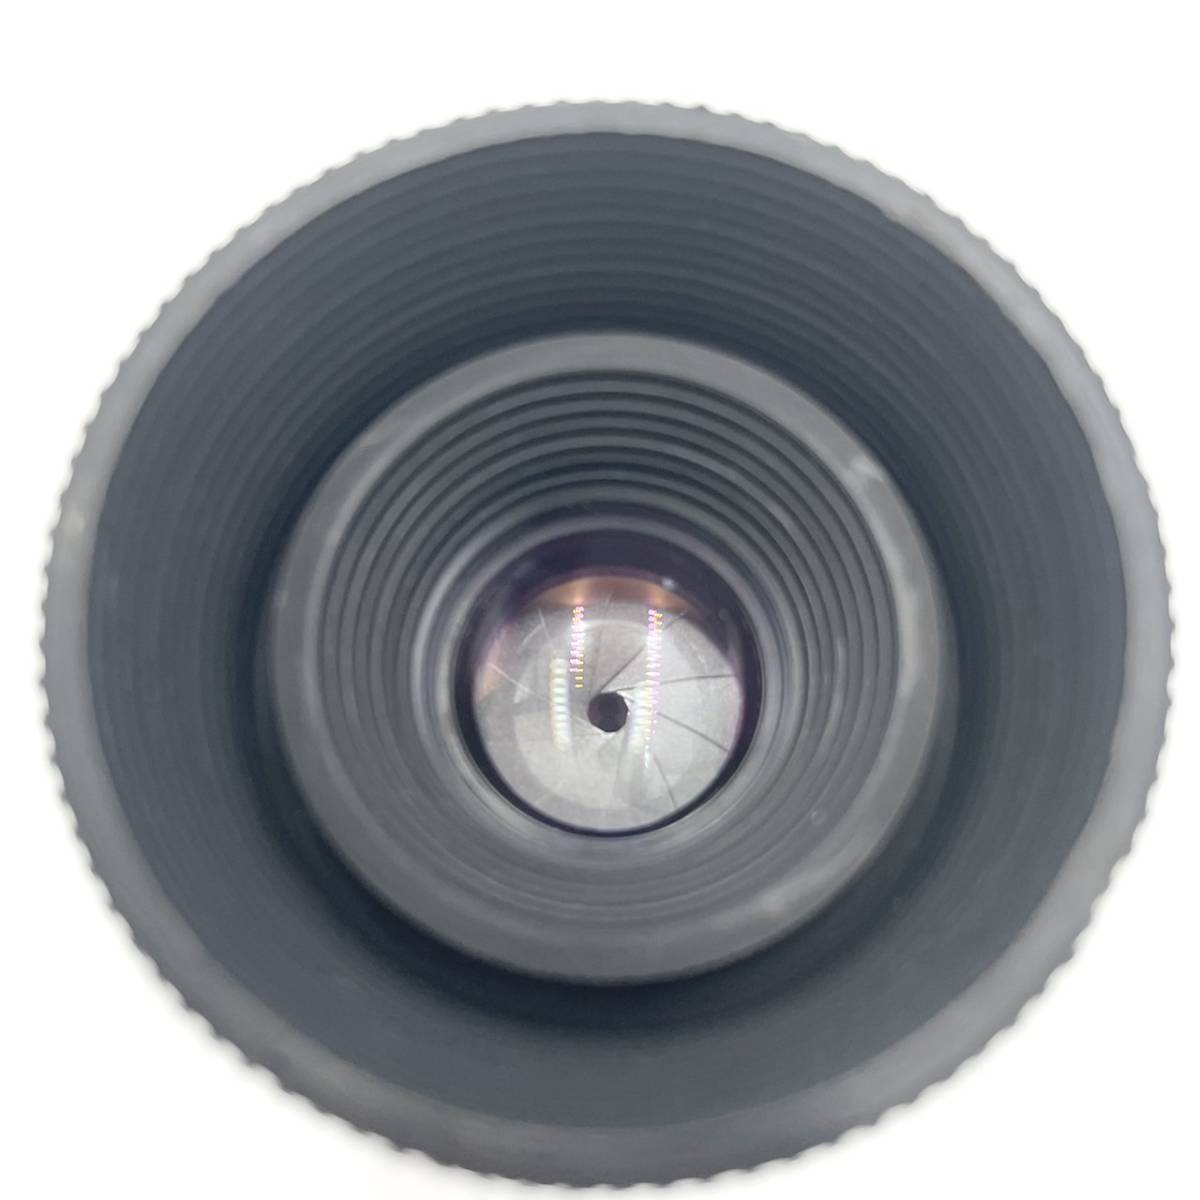 ★レア・良品★ ライツ 引き伸ばしレンズ フォコター LEITZ WETZLAR FOCOTAR F2.8 40mm Lens Made in Germany マルチコート_画像6